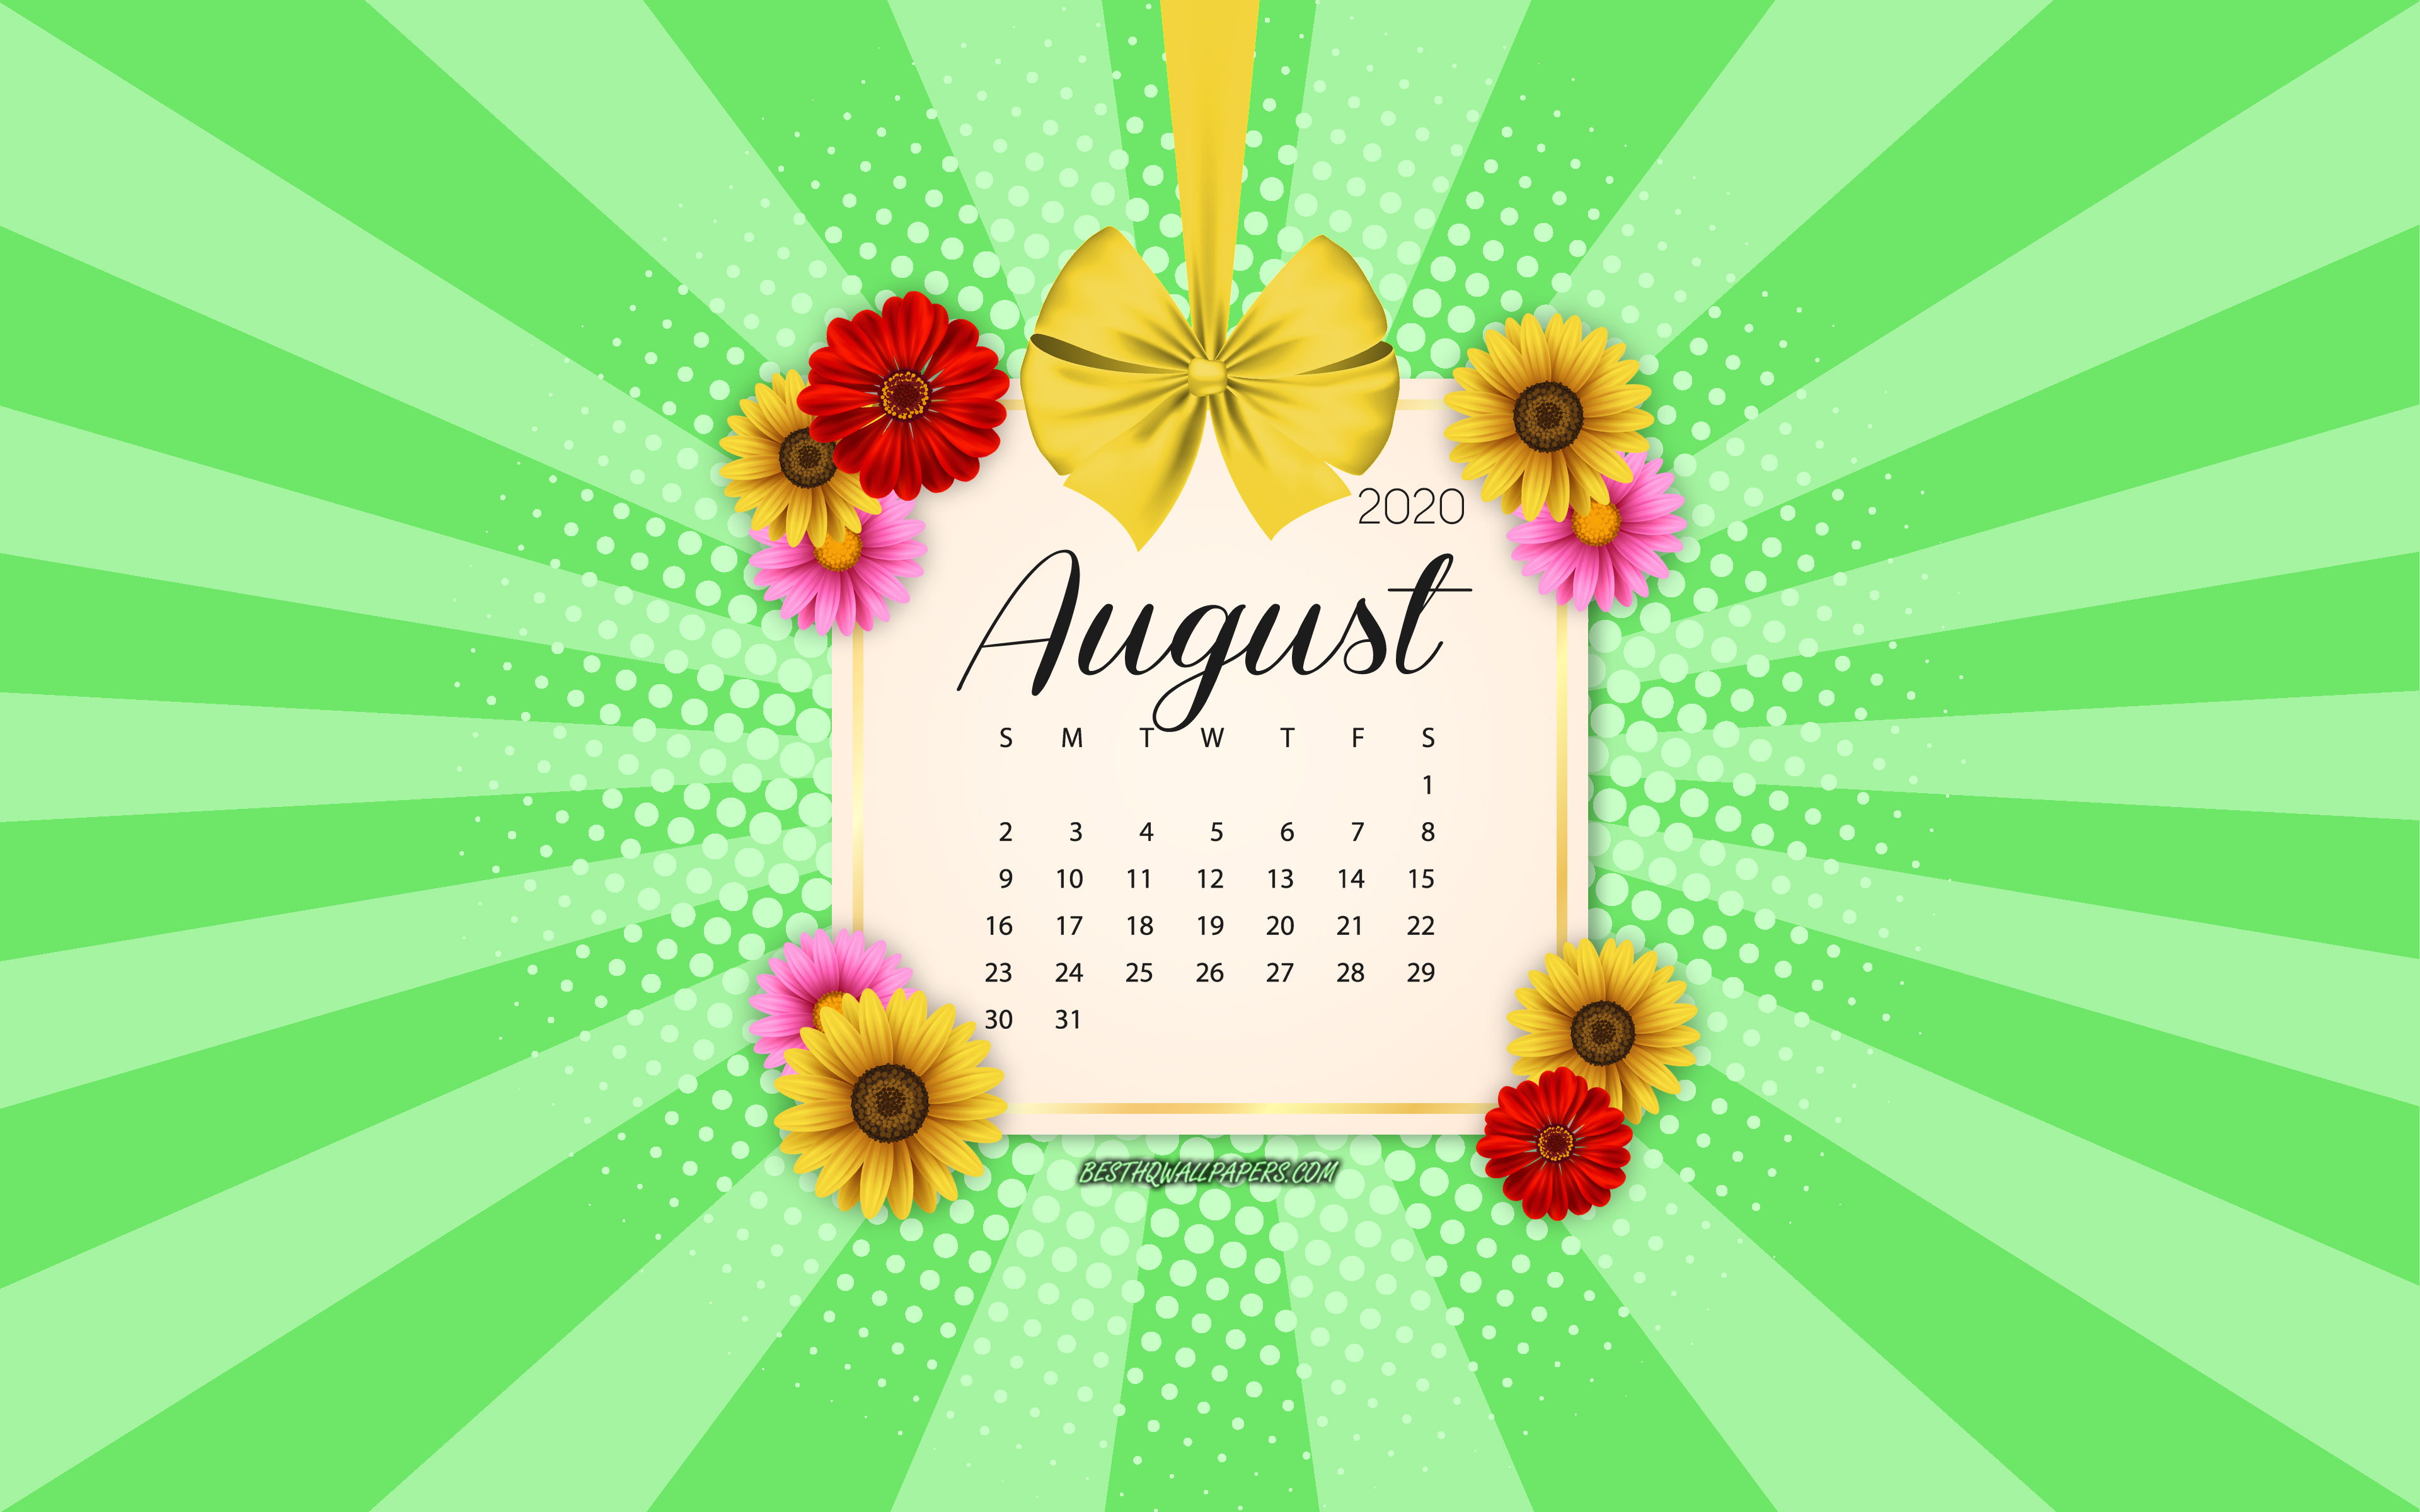 Download Wallpapers 2020 August Calendar Green Background Summer 2020 Calendars August 2020 8907